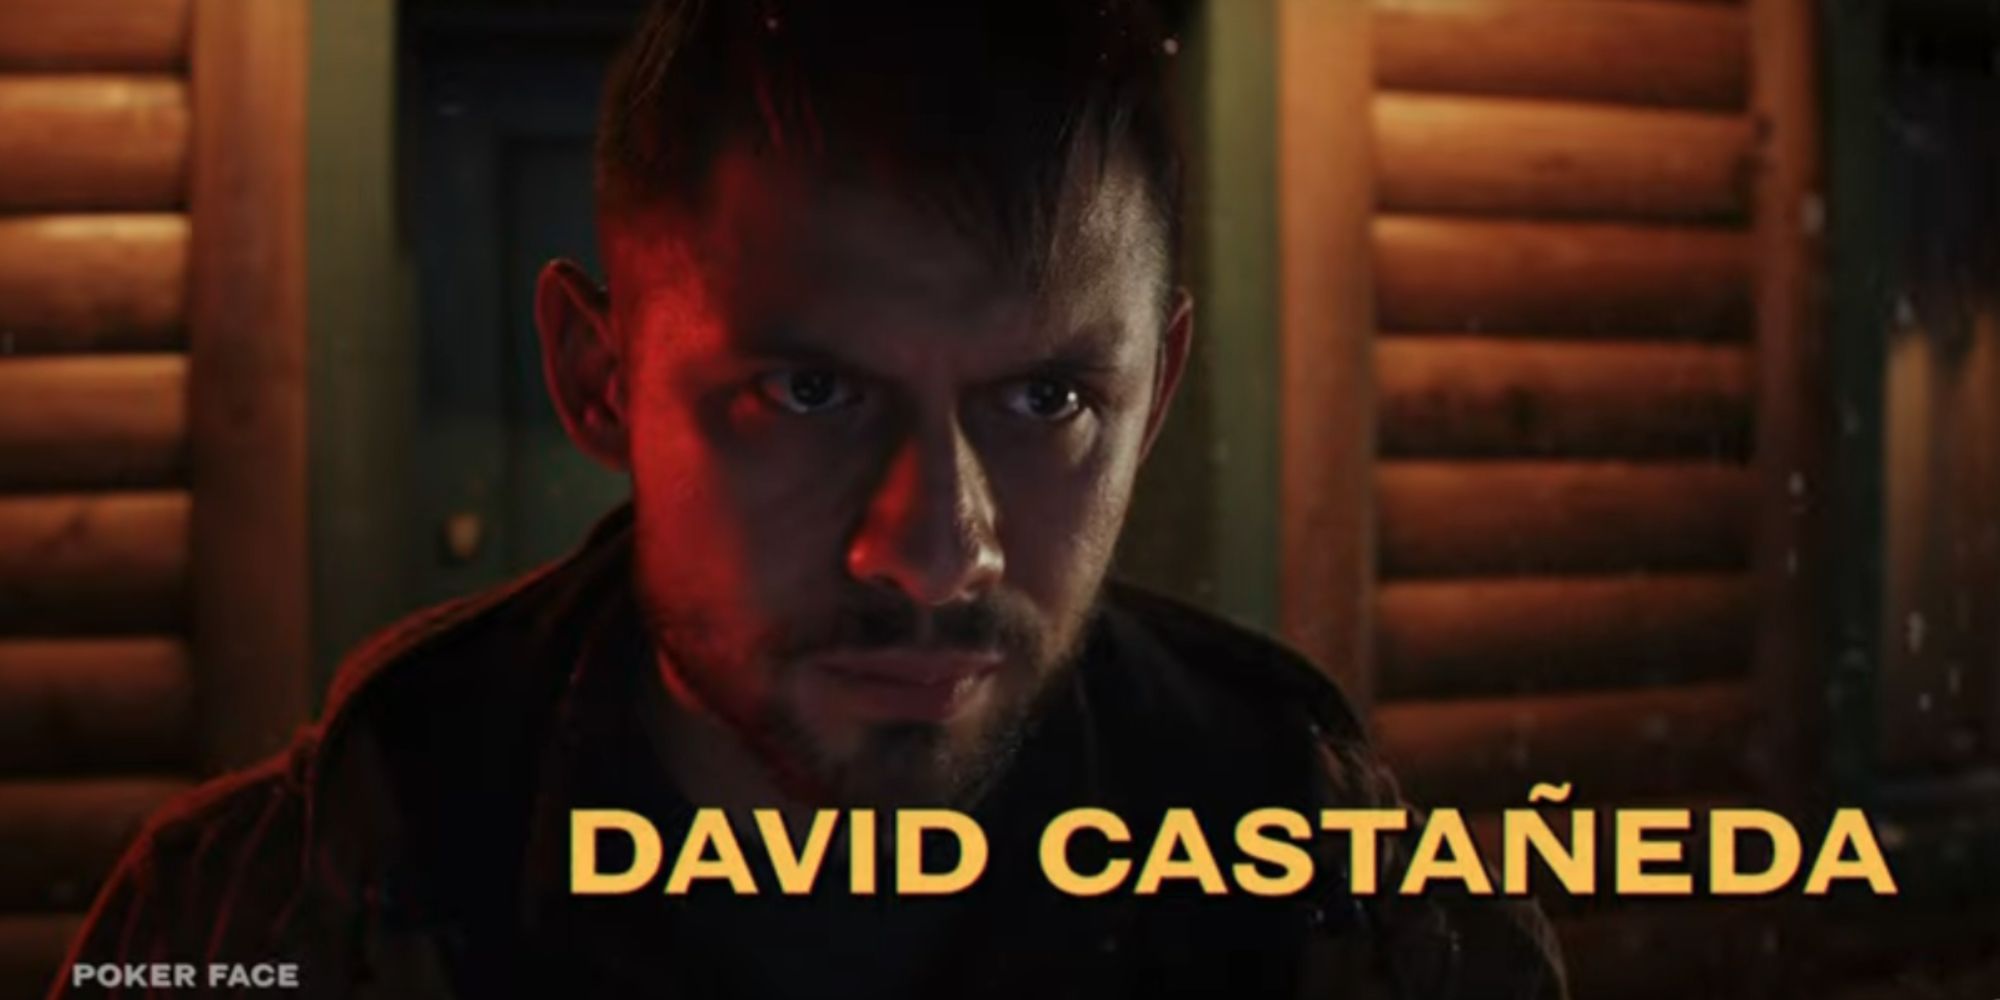 David Castañeda in the trailer for Poker Face 